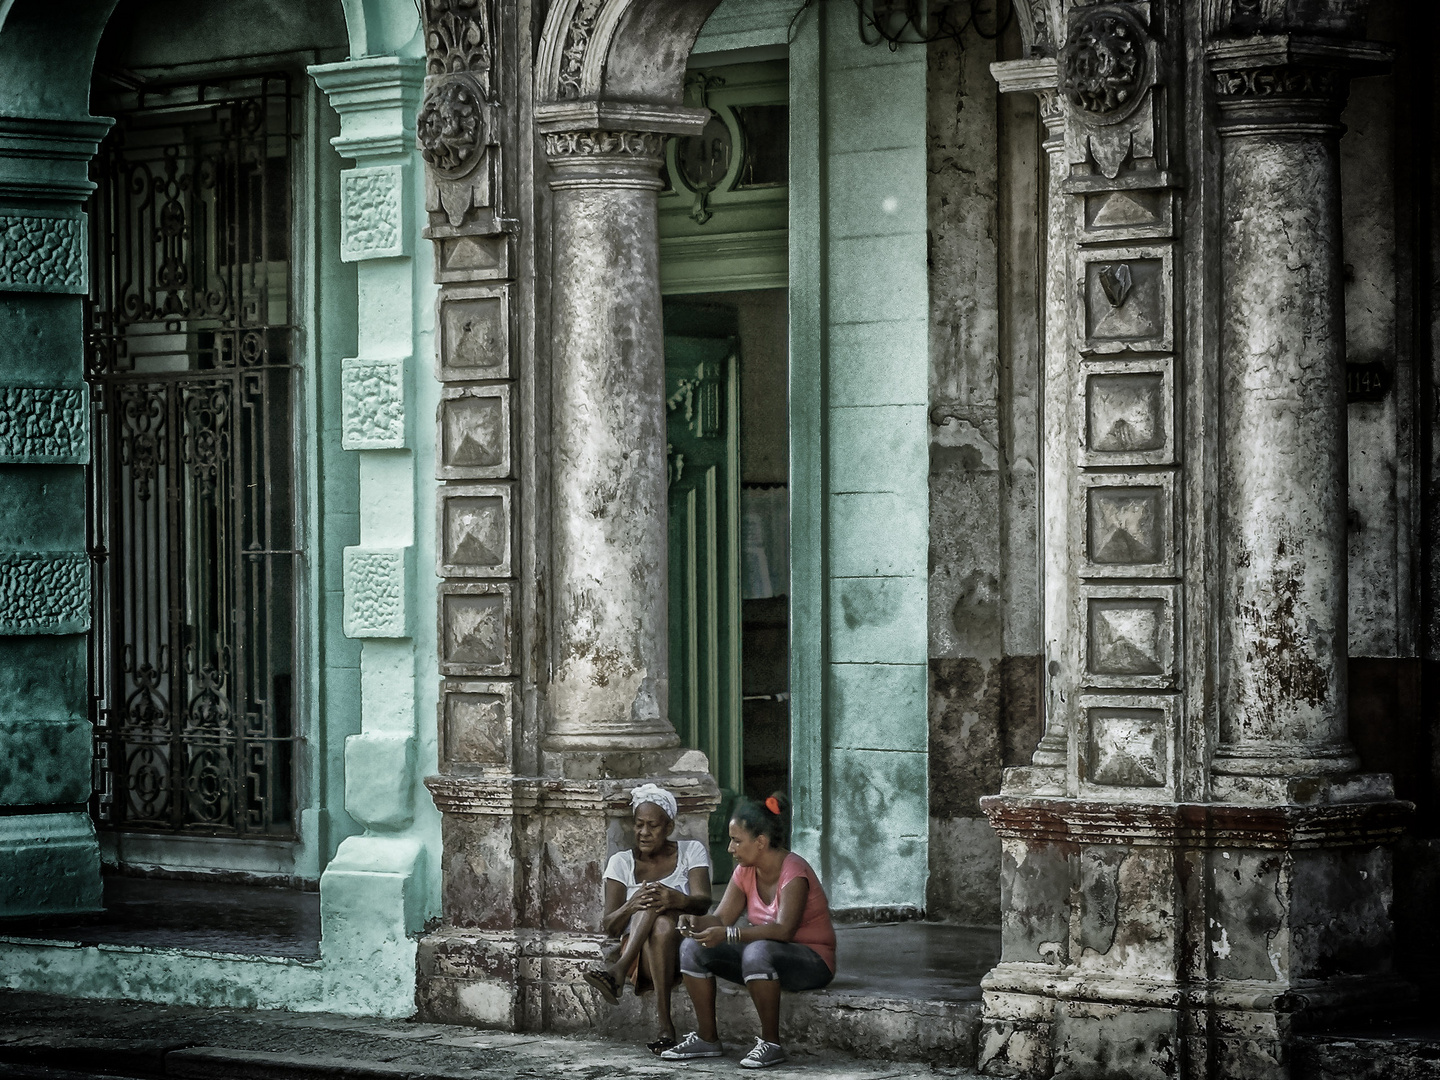 Streetlife in Havana